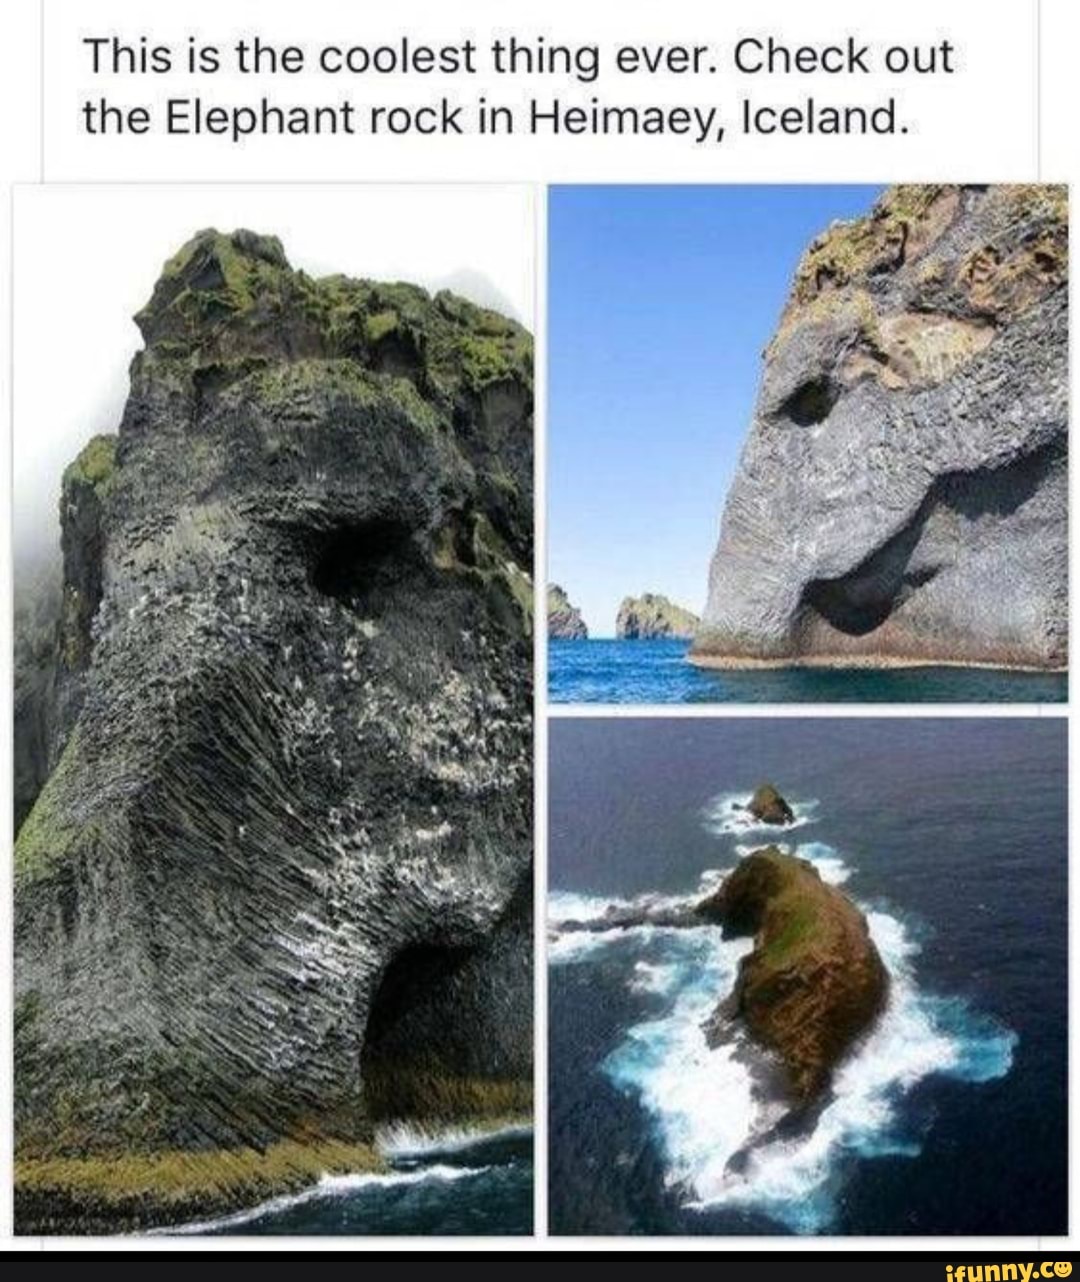 Скала слон острова хеймаэй